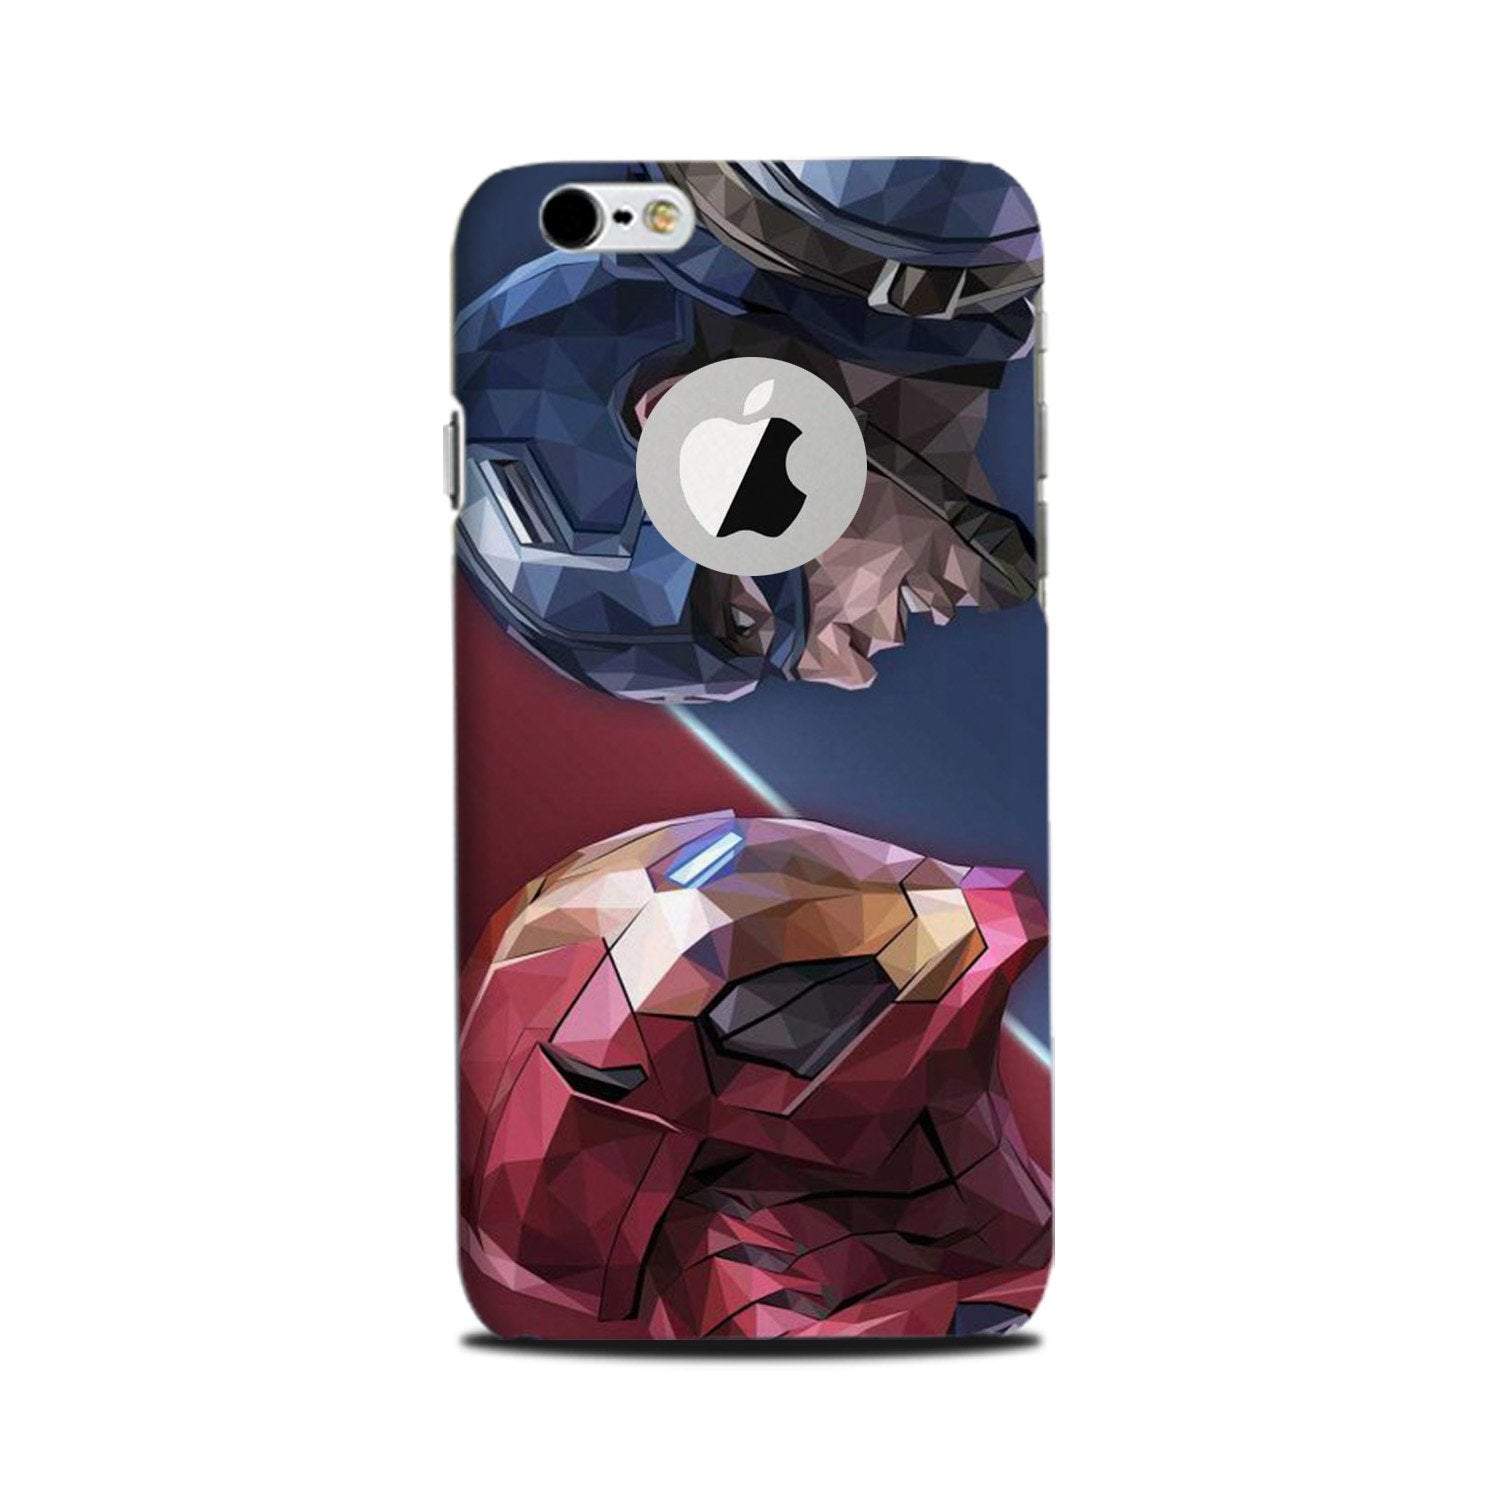 Ironman Captain America Case for iPhone 6 Plus / 6s Plus logo cut(Design No. 245)